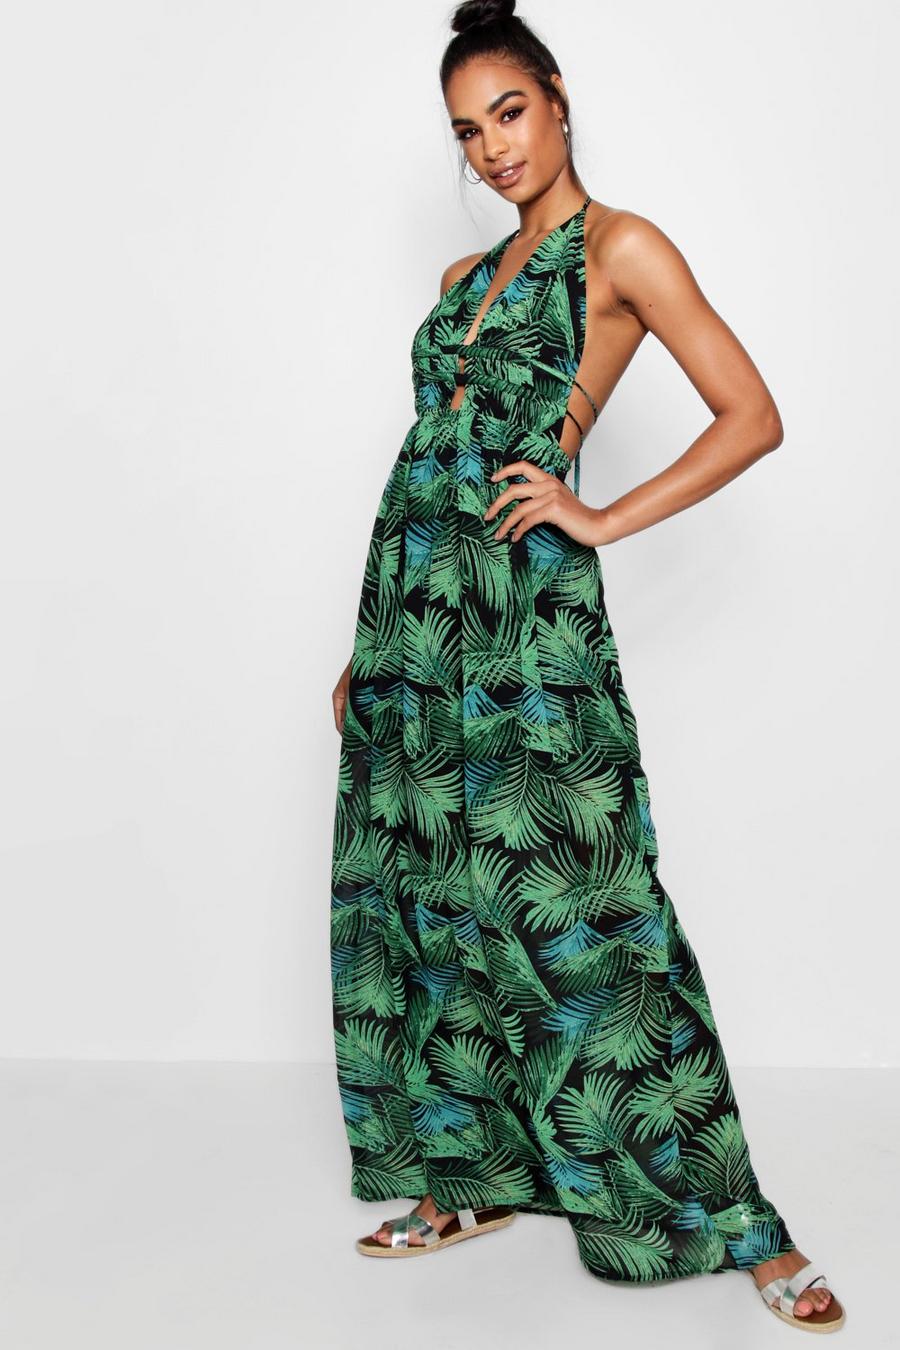 ירוק עלה שמלת מקסי מחשוף עמוק עם הדפס עצי דקל לנשים גבוהות